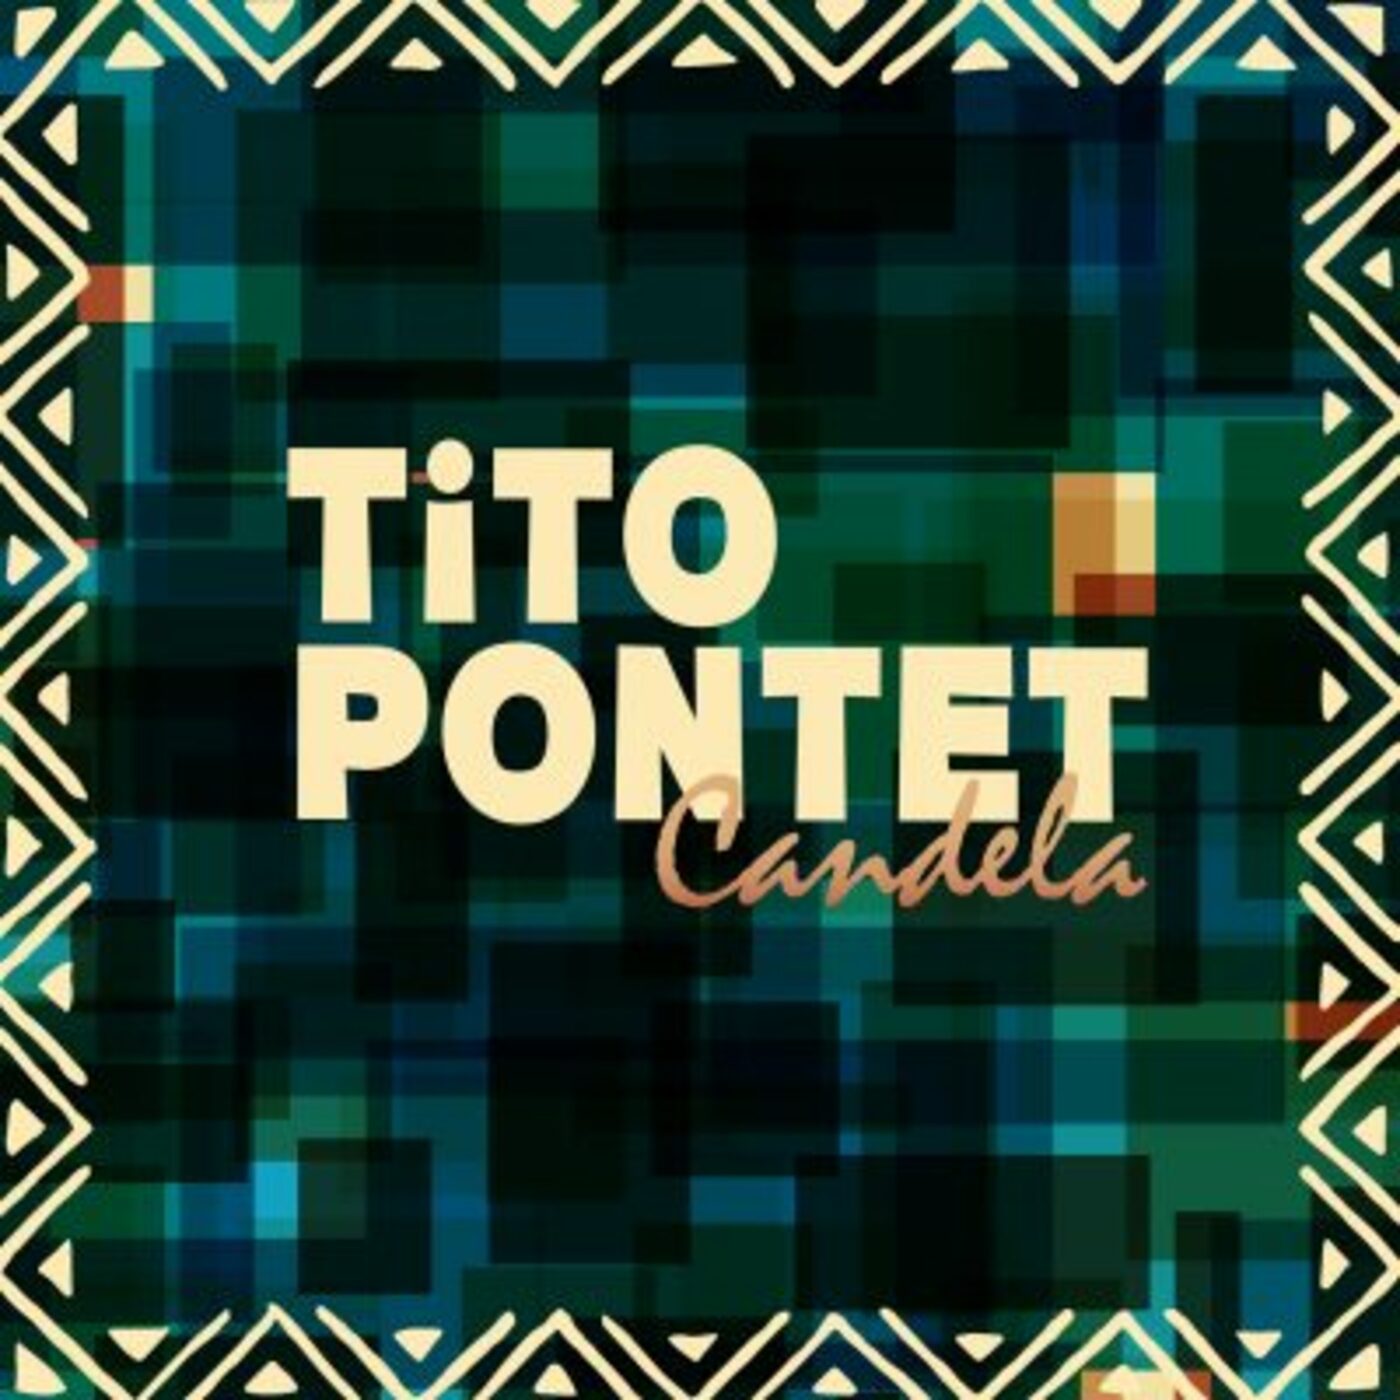 Tito Pontet - Candela | musica en valencià